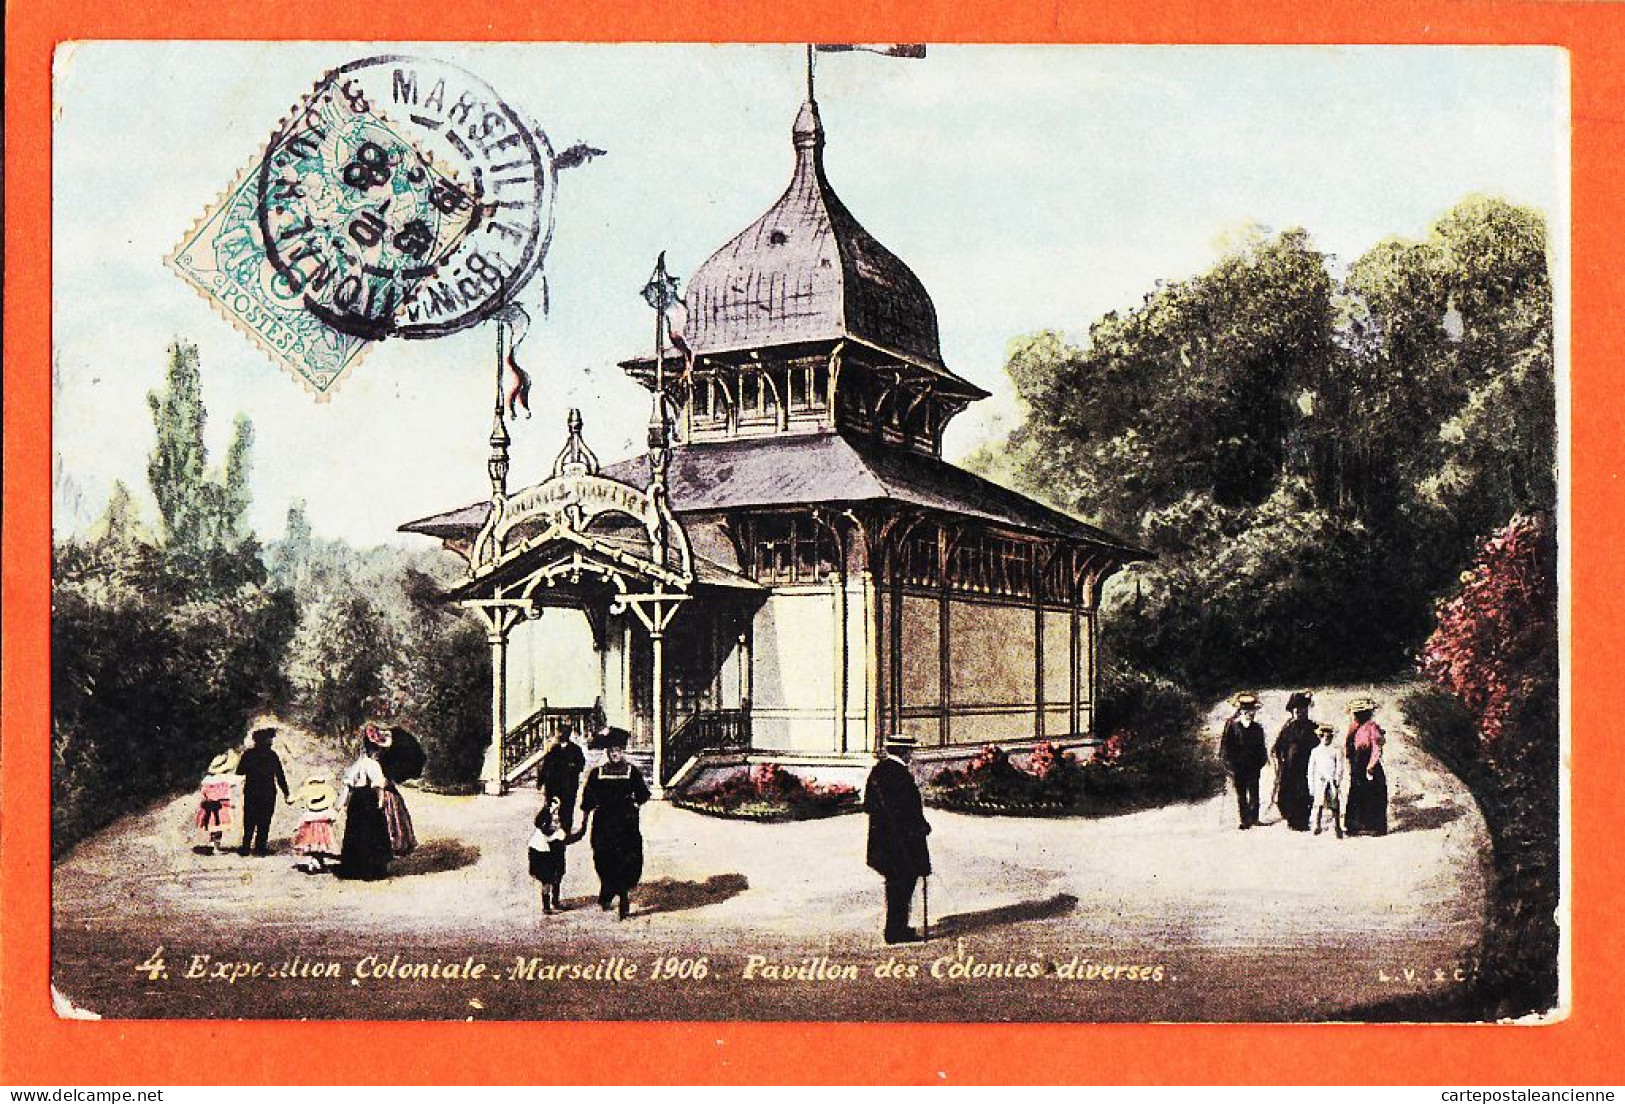 10713 ● Aqua-Photo L.V 4 MARSEILLE Exposition Coloniale 1906 Pavillon COLONIES DIVERSES à Honoré VILAREM-LEOPOLD VERGER - Kolonialausstellungen 1906 - 1922